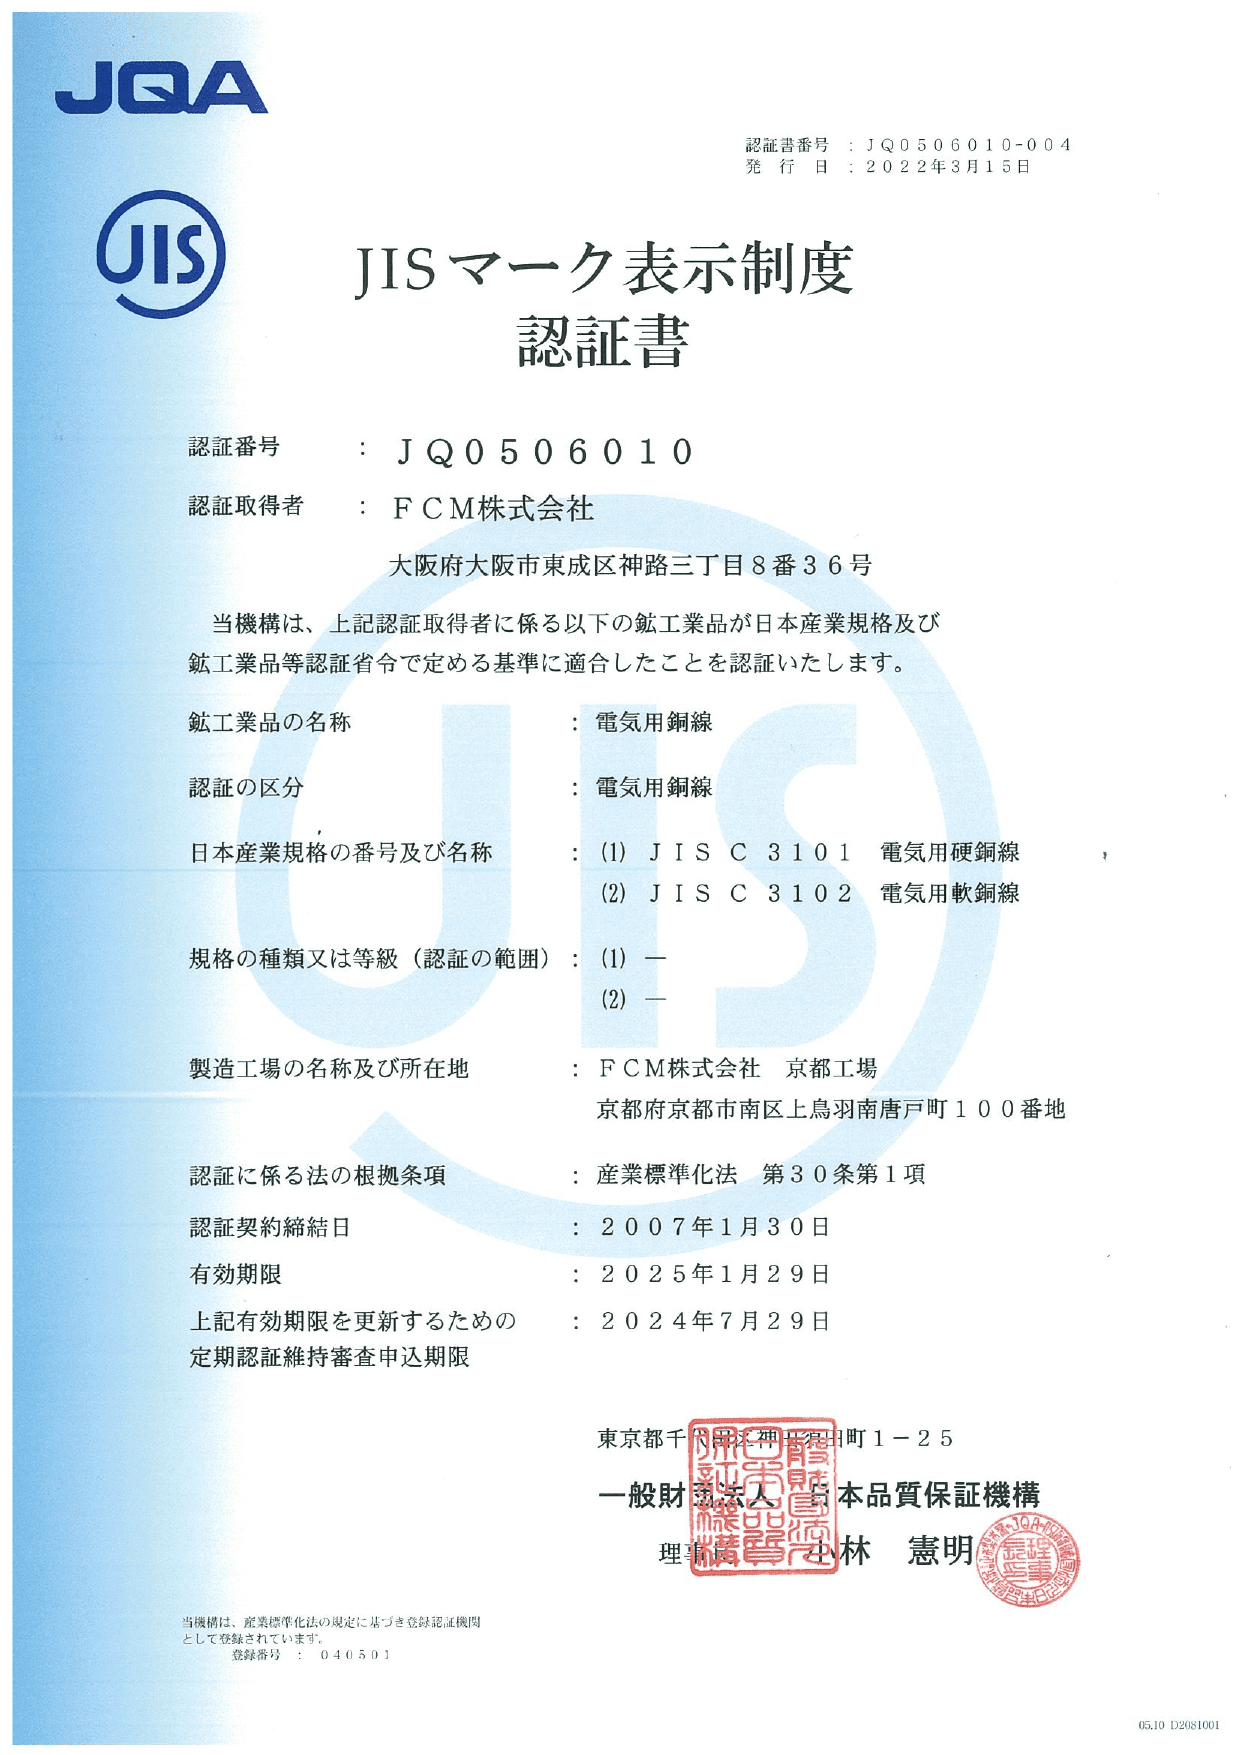 JIS mark display system certificate